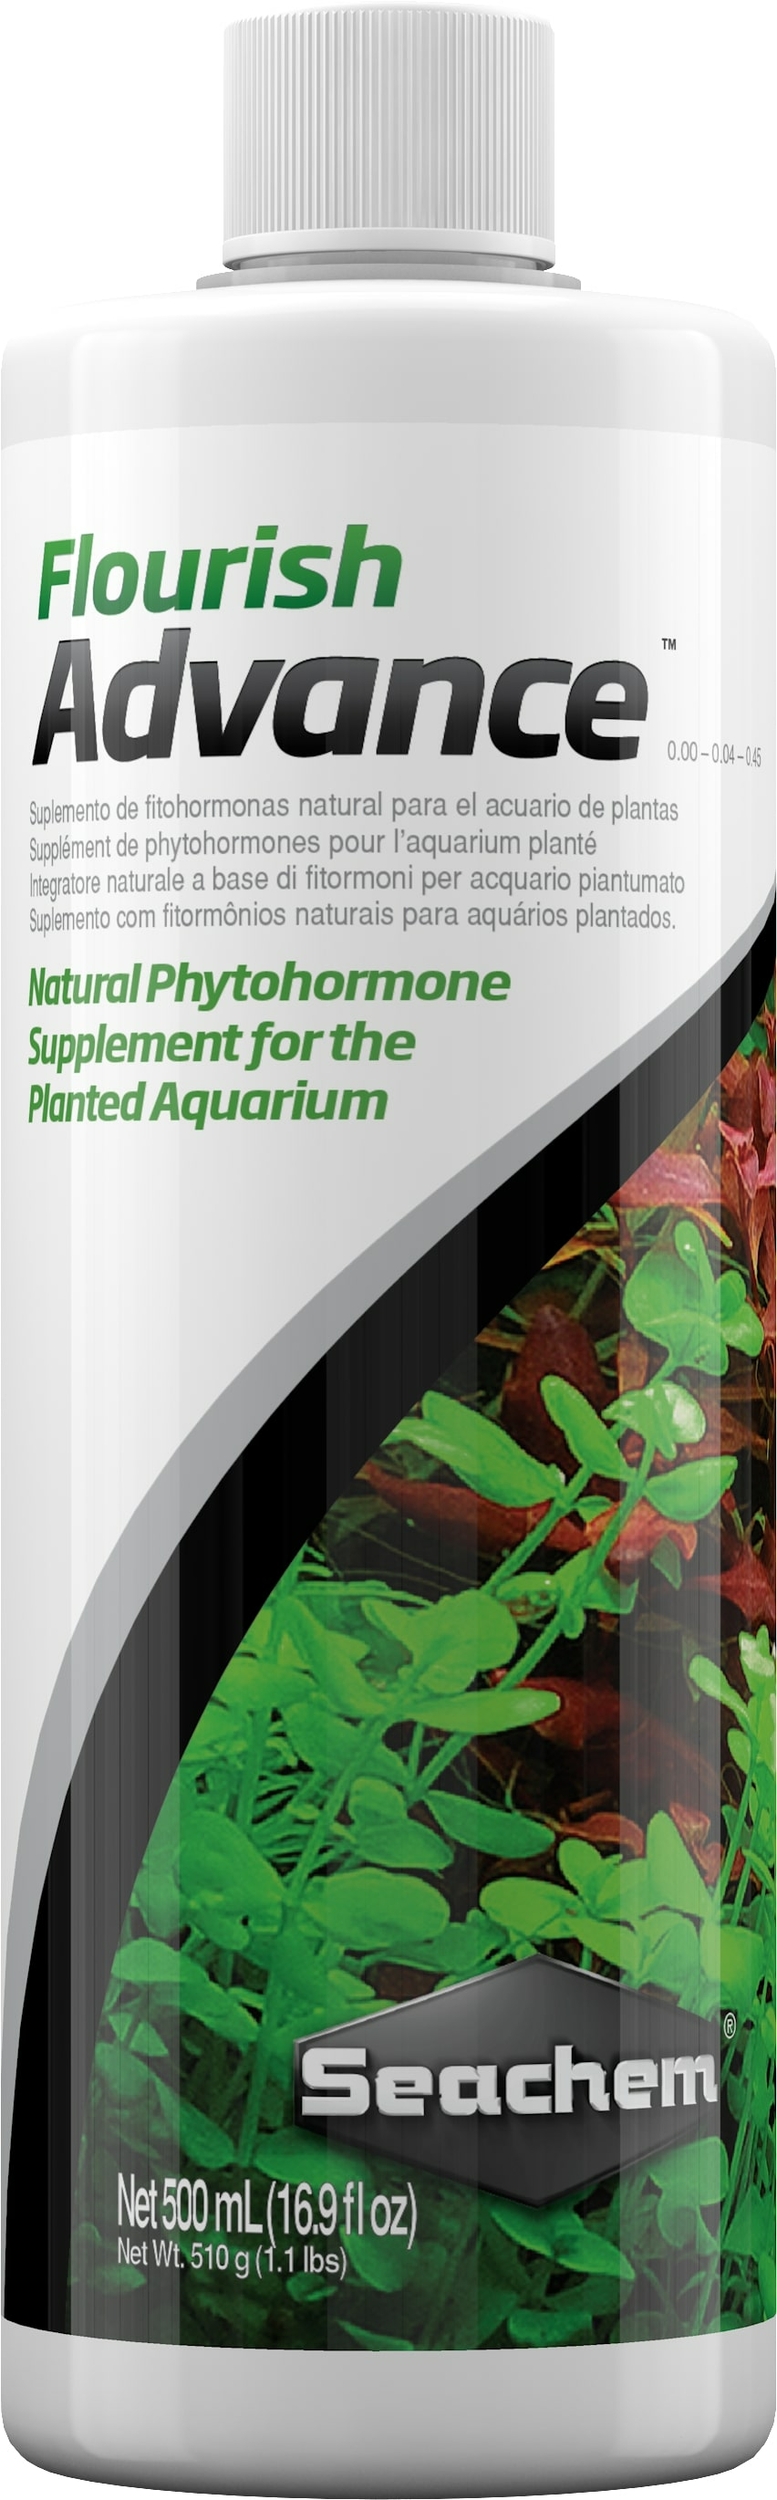 seachem-flourish-advance-500-ml-supplement-de-phytohormones-naturelles-pour-booster-la-croissance-des-plantes